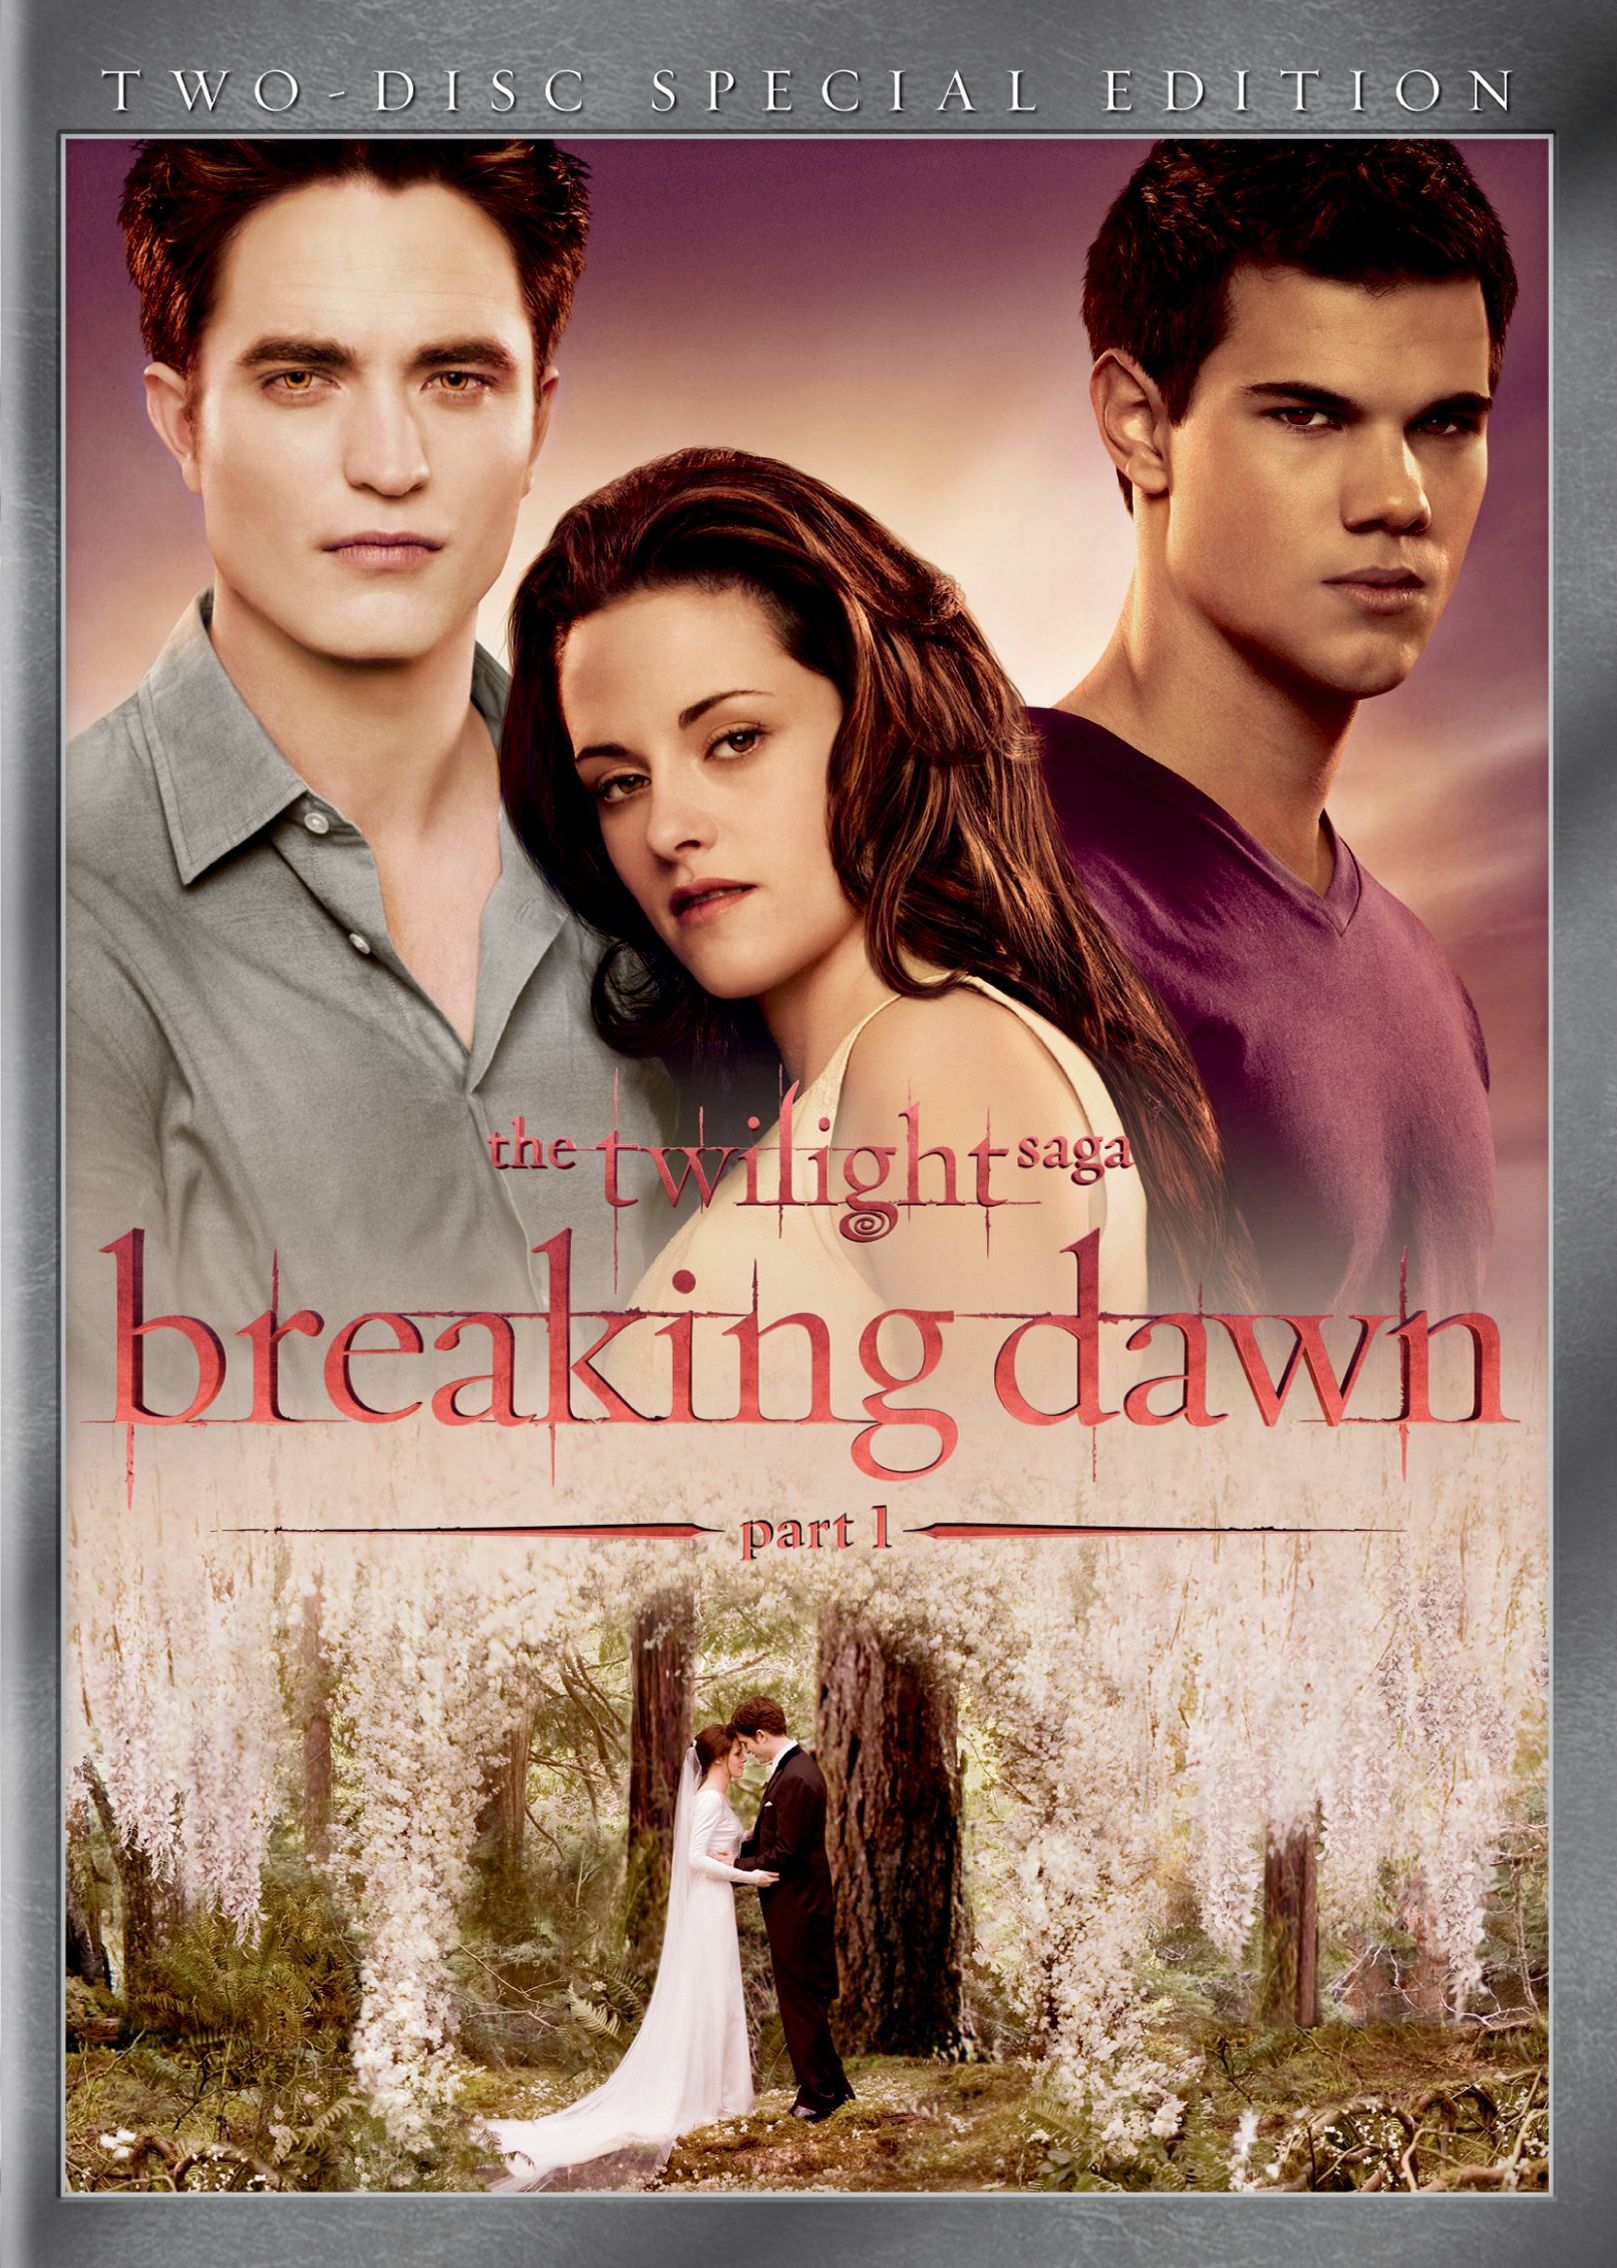 watch twilight breaking dawn part 1 online free hd